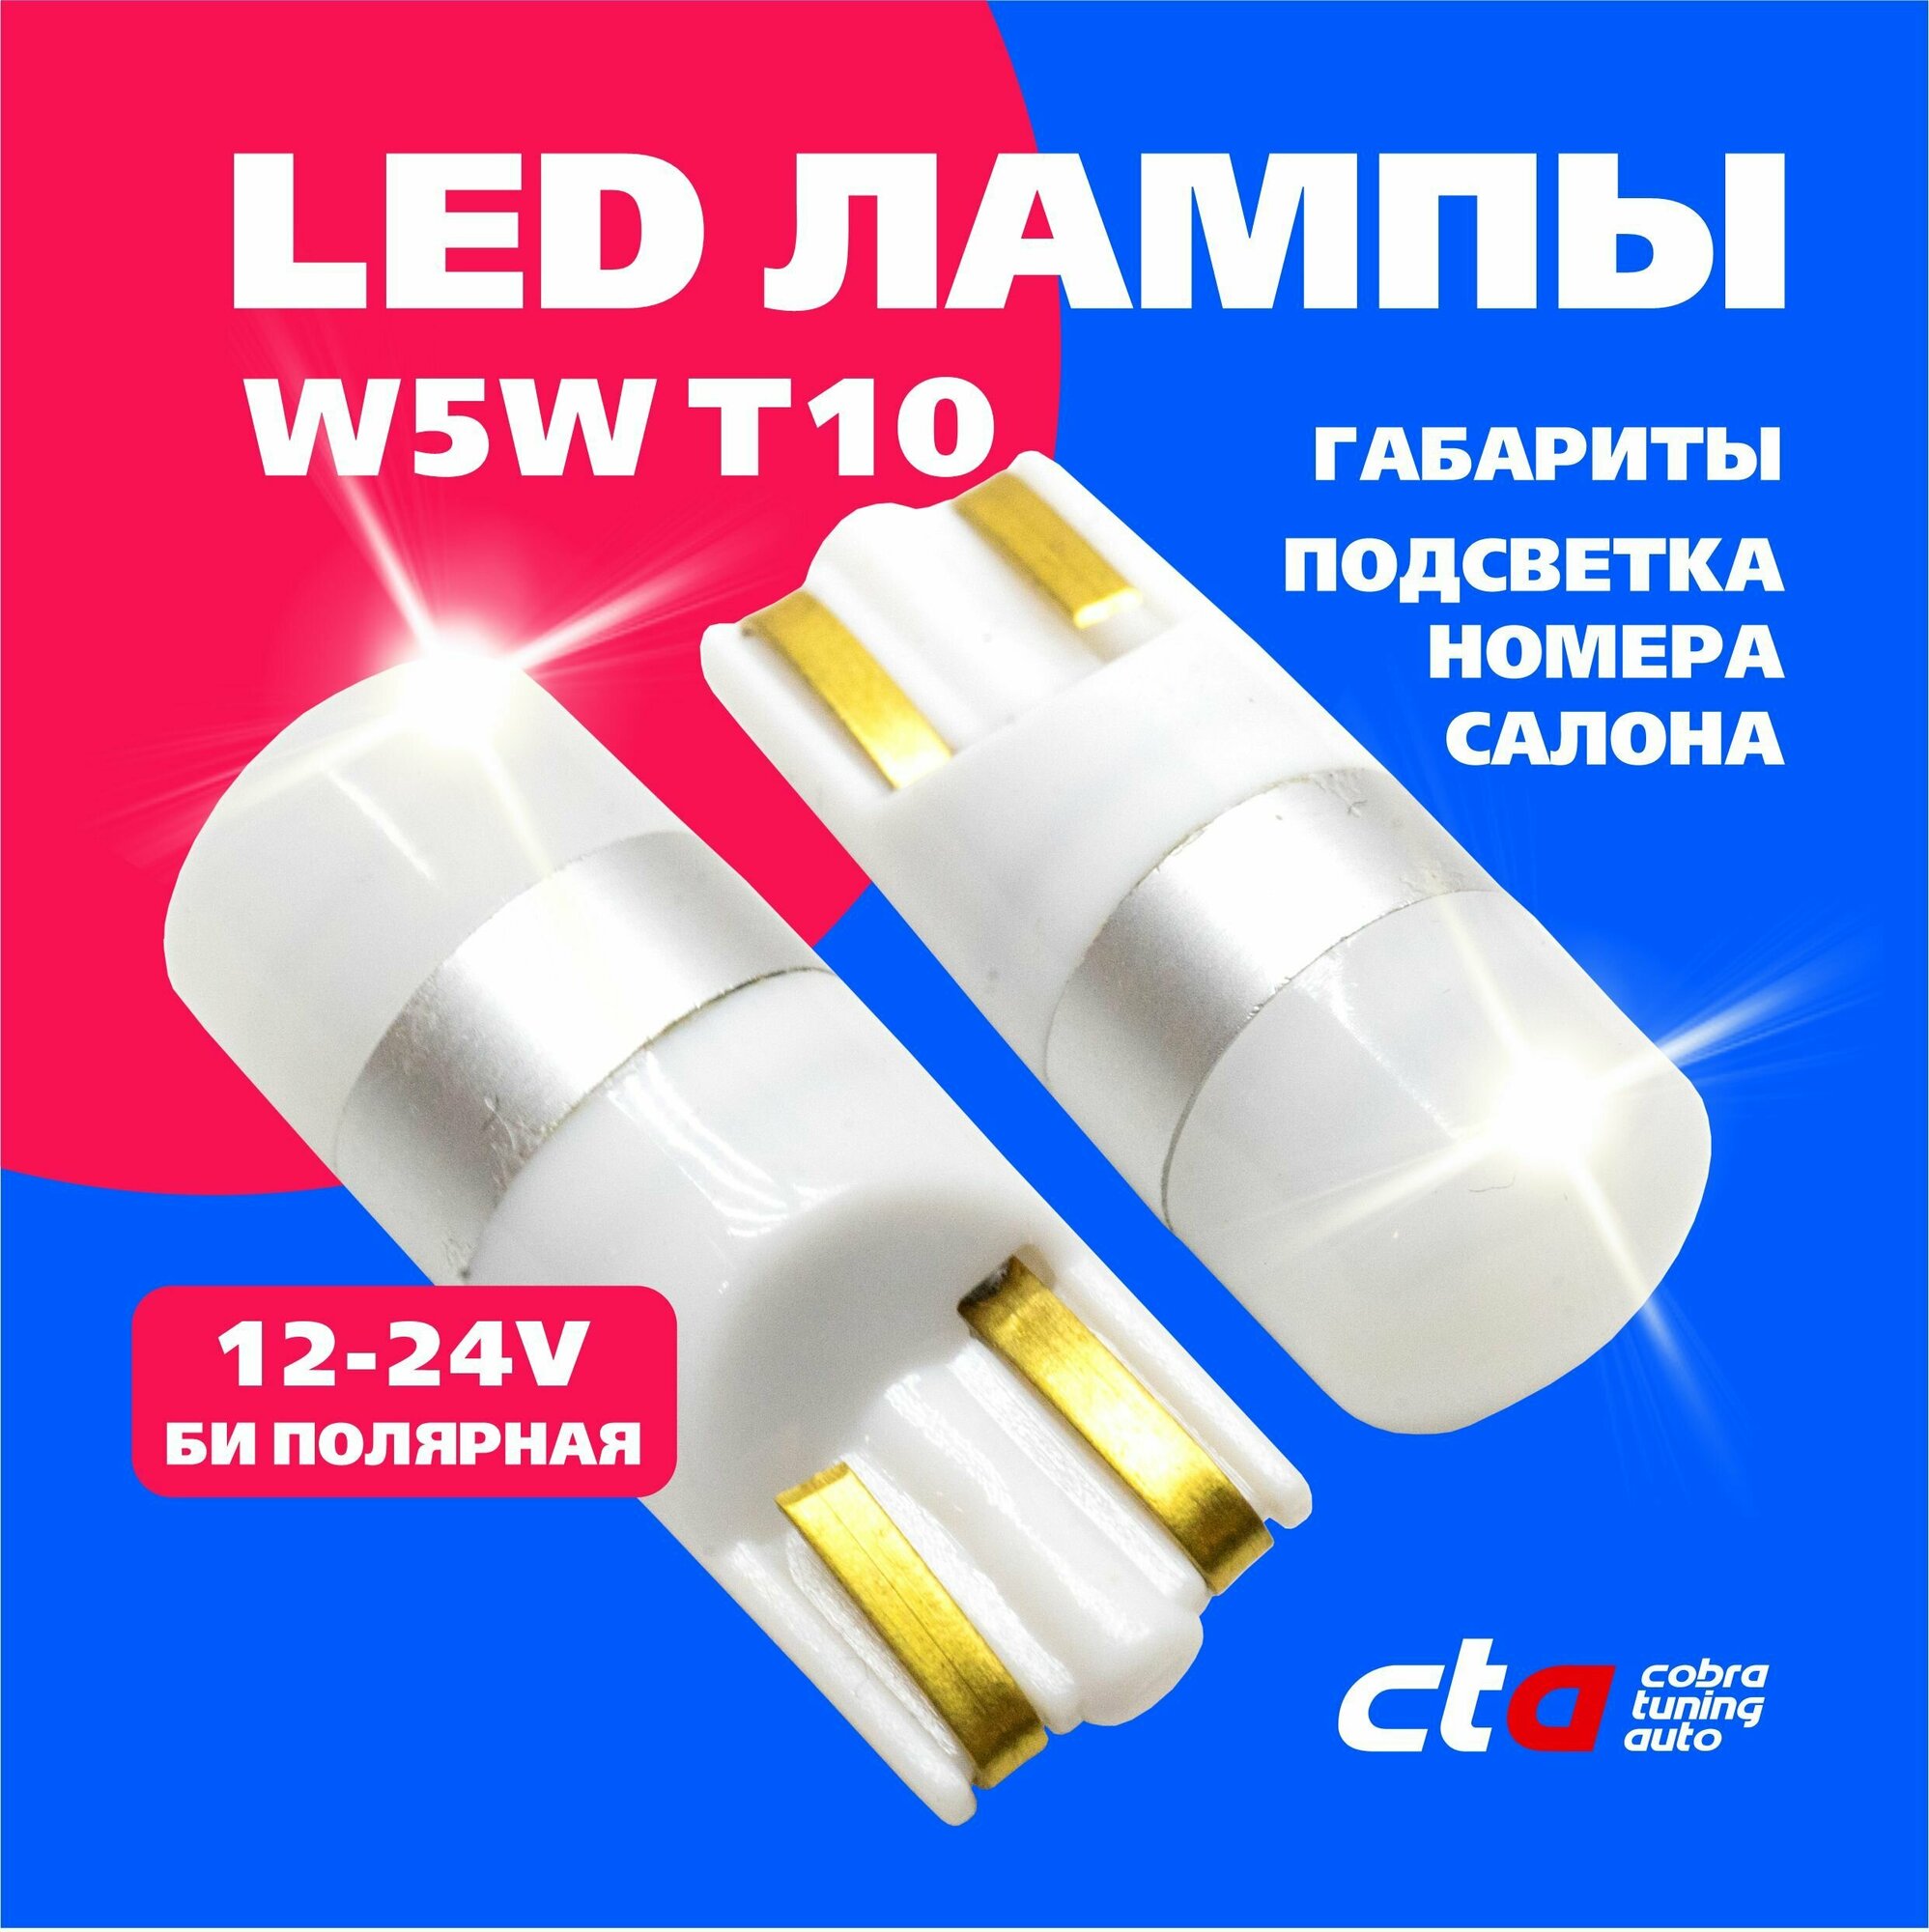 Светодиодная LED лампа для авто W5W T10 12-24V габариты подсветка номера салона би полярная 2 штуки